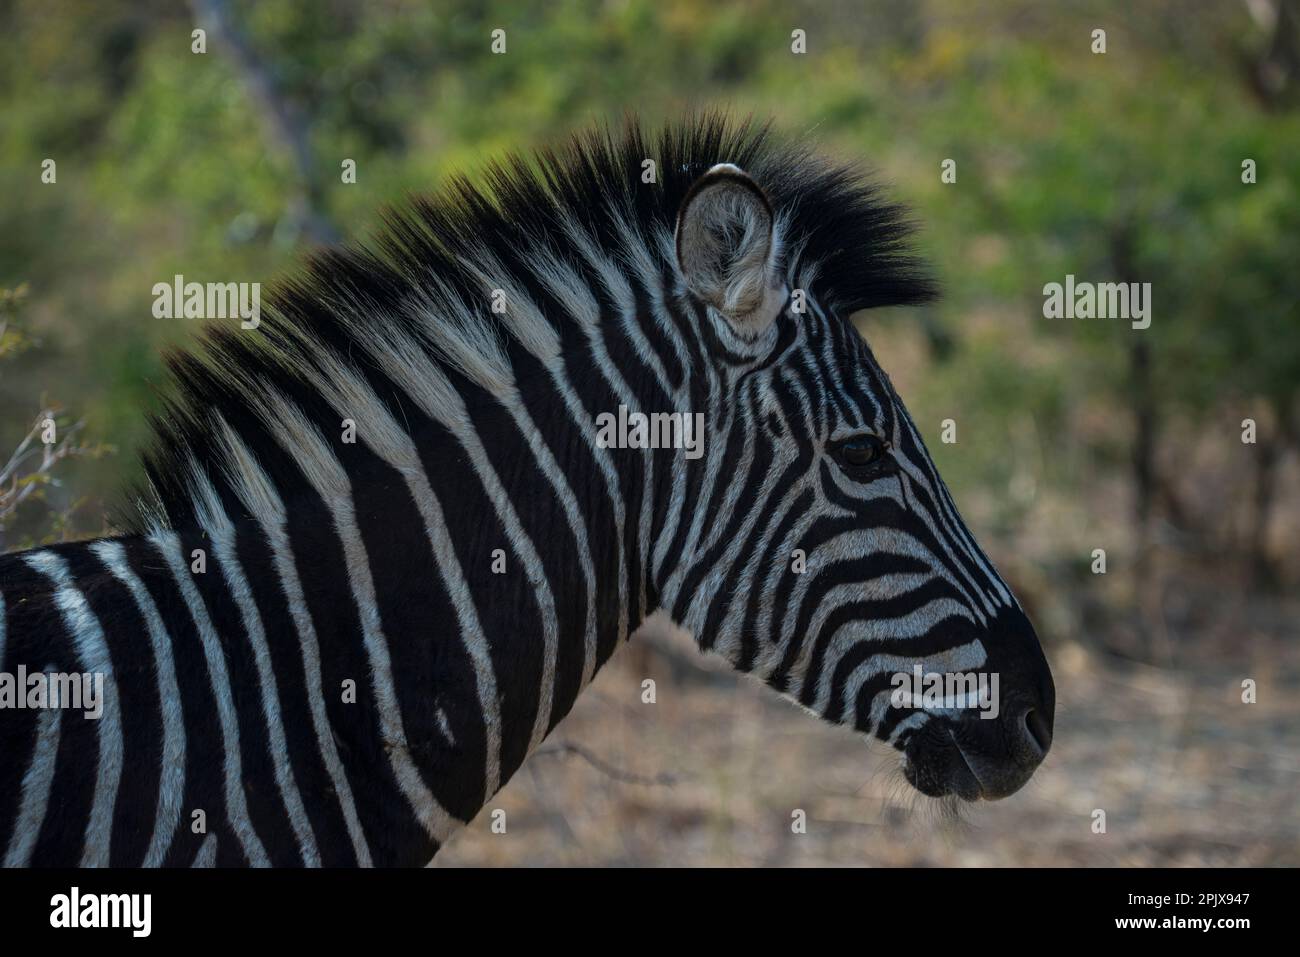 The plains zebra (Equus quagga, formerly Equus burchellii), also